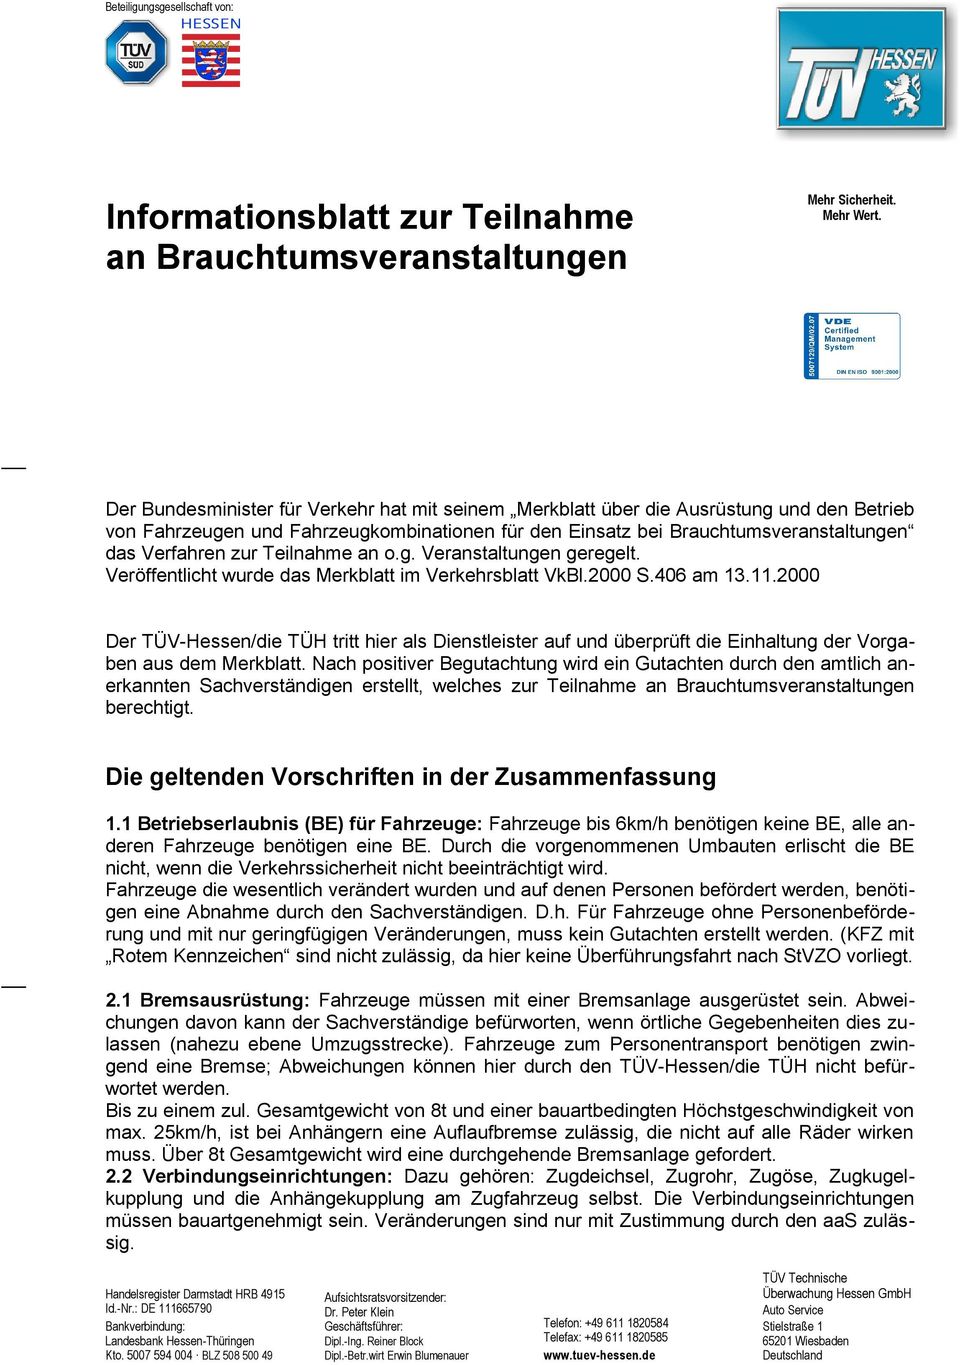 Teilnahme an o.g. Veranstaltungen geregelt. Veröffentlicht wurde das Merkblatt im Verkehrsblatt VkBl.2000 S.406 am 13.11.